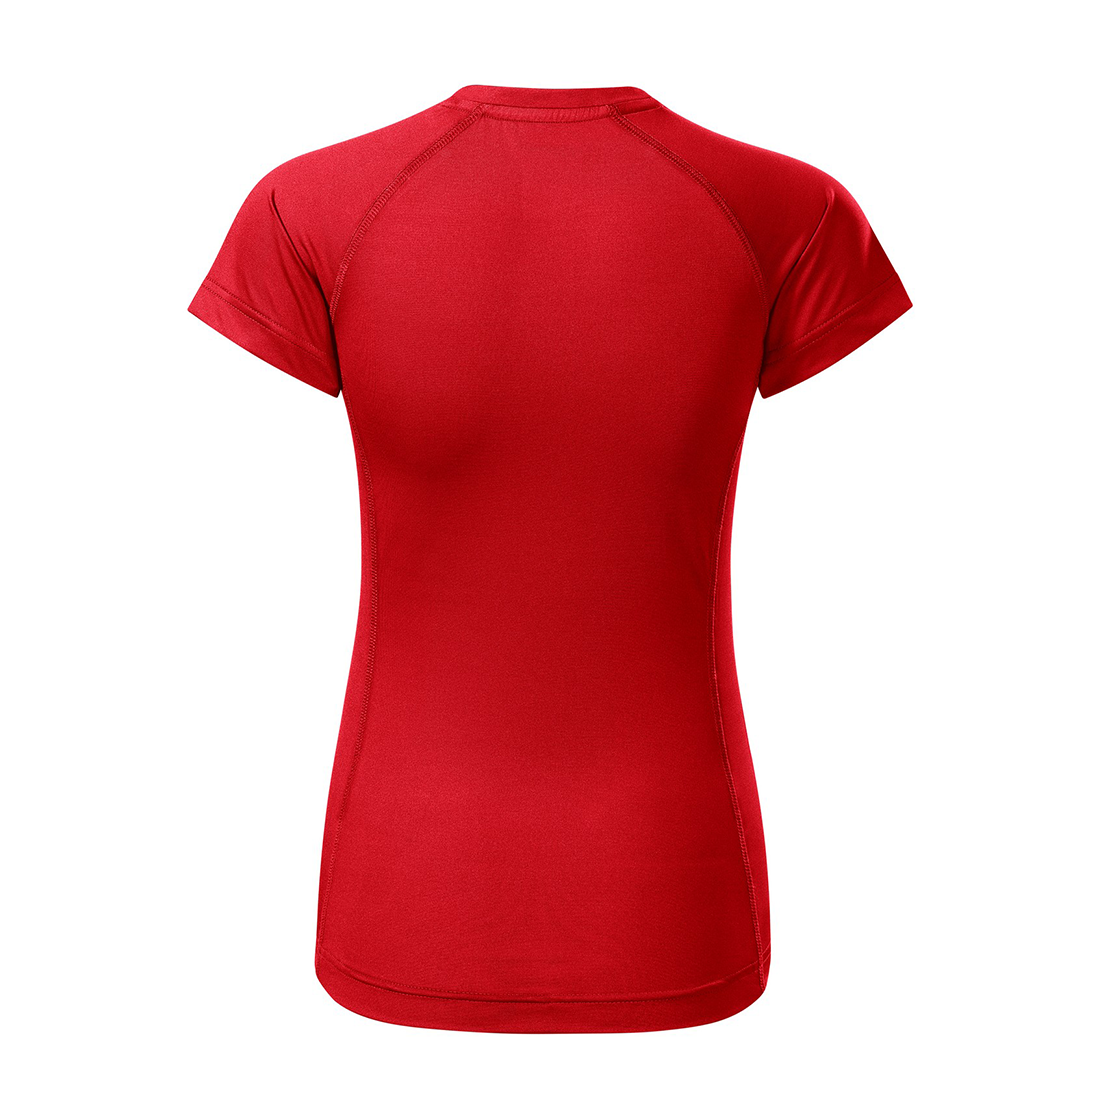 Women's T-shirt DESTINY - Safetywear